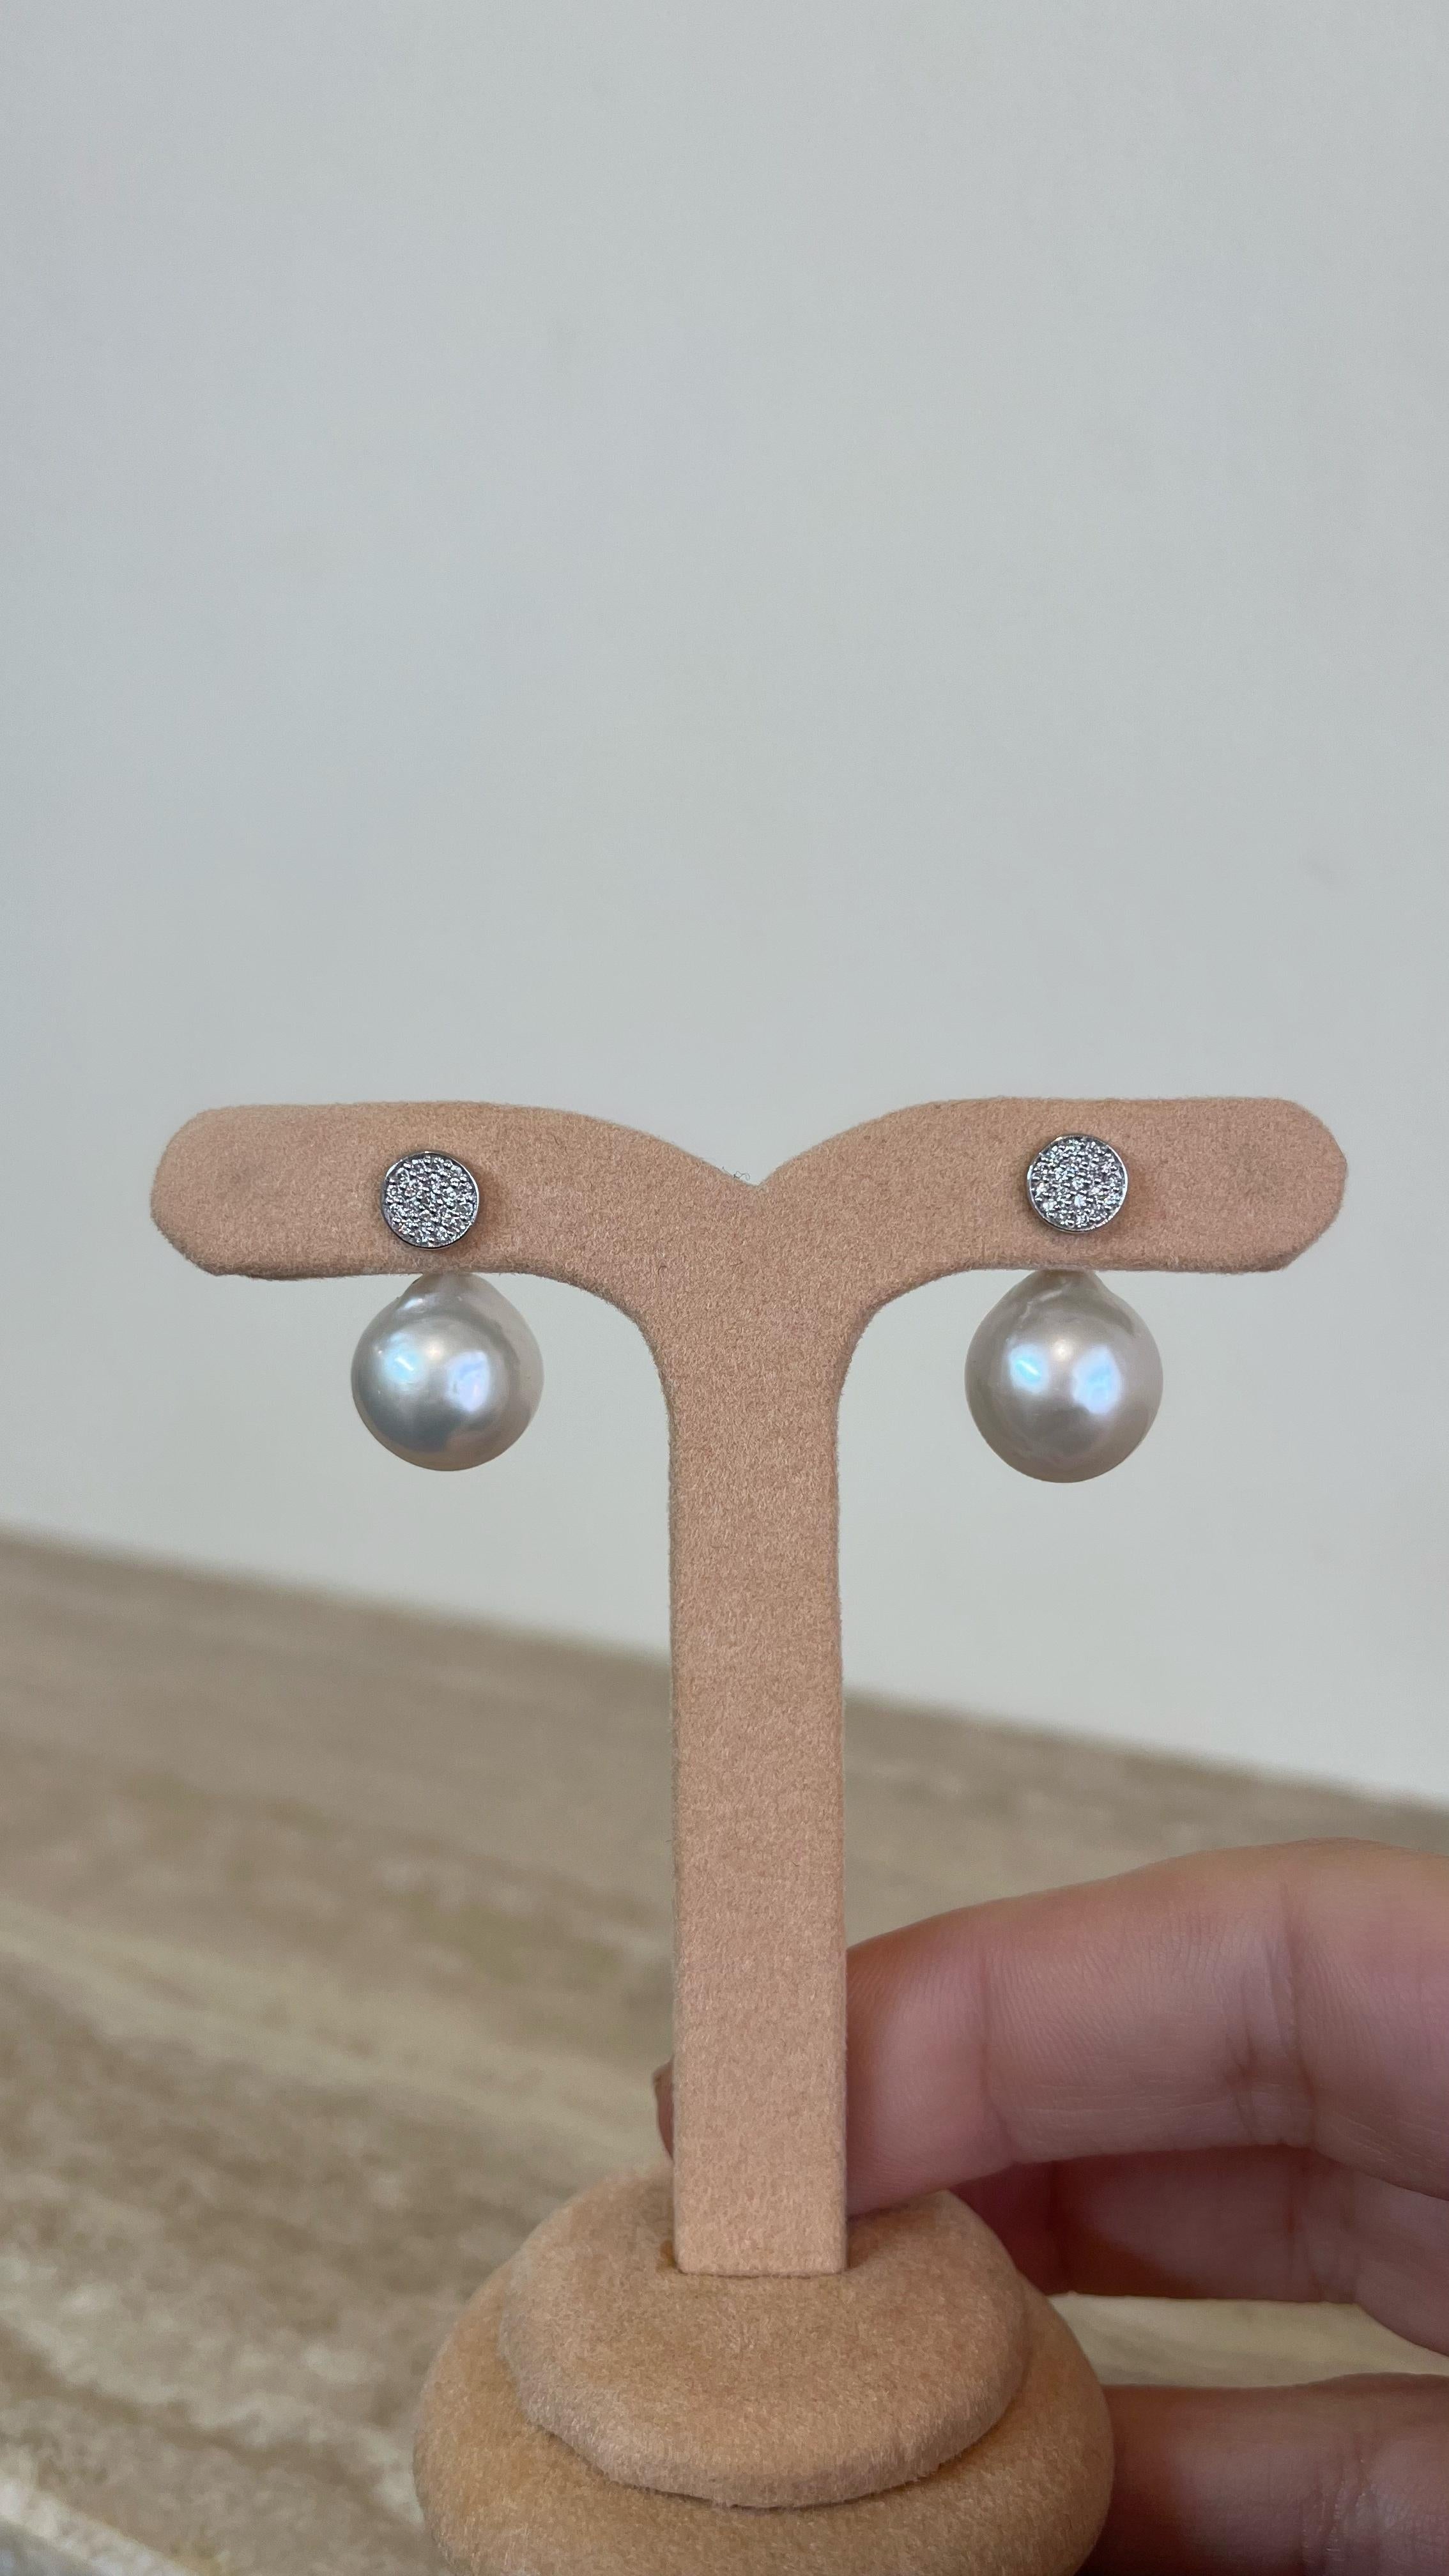 Unsere 'Diamantscheiben-Ohrringe' bestehen aus einem Paar schimmernder Diamantscheiben, gefasst in 18 Karat Weißgold. 

Die diamantenen Ohrstecker können allein als perfekter Luxus-Ohrstecker für jeden Tag getragen werden, oder mit den zusätzlichen